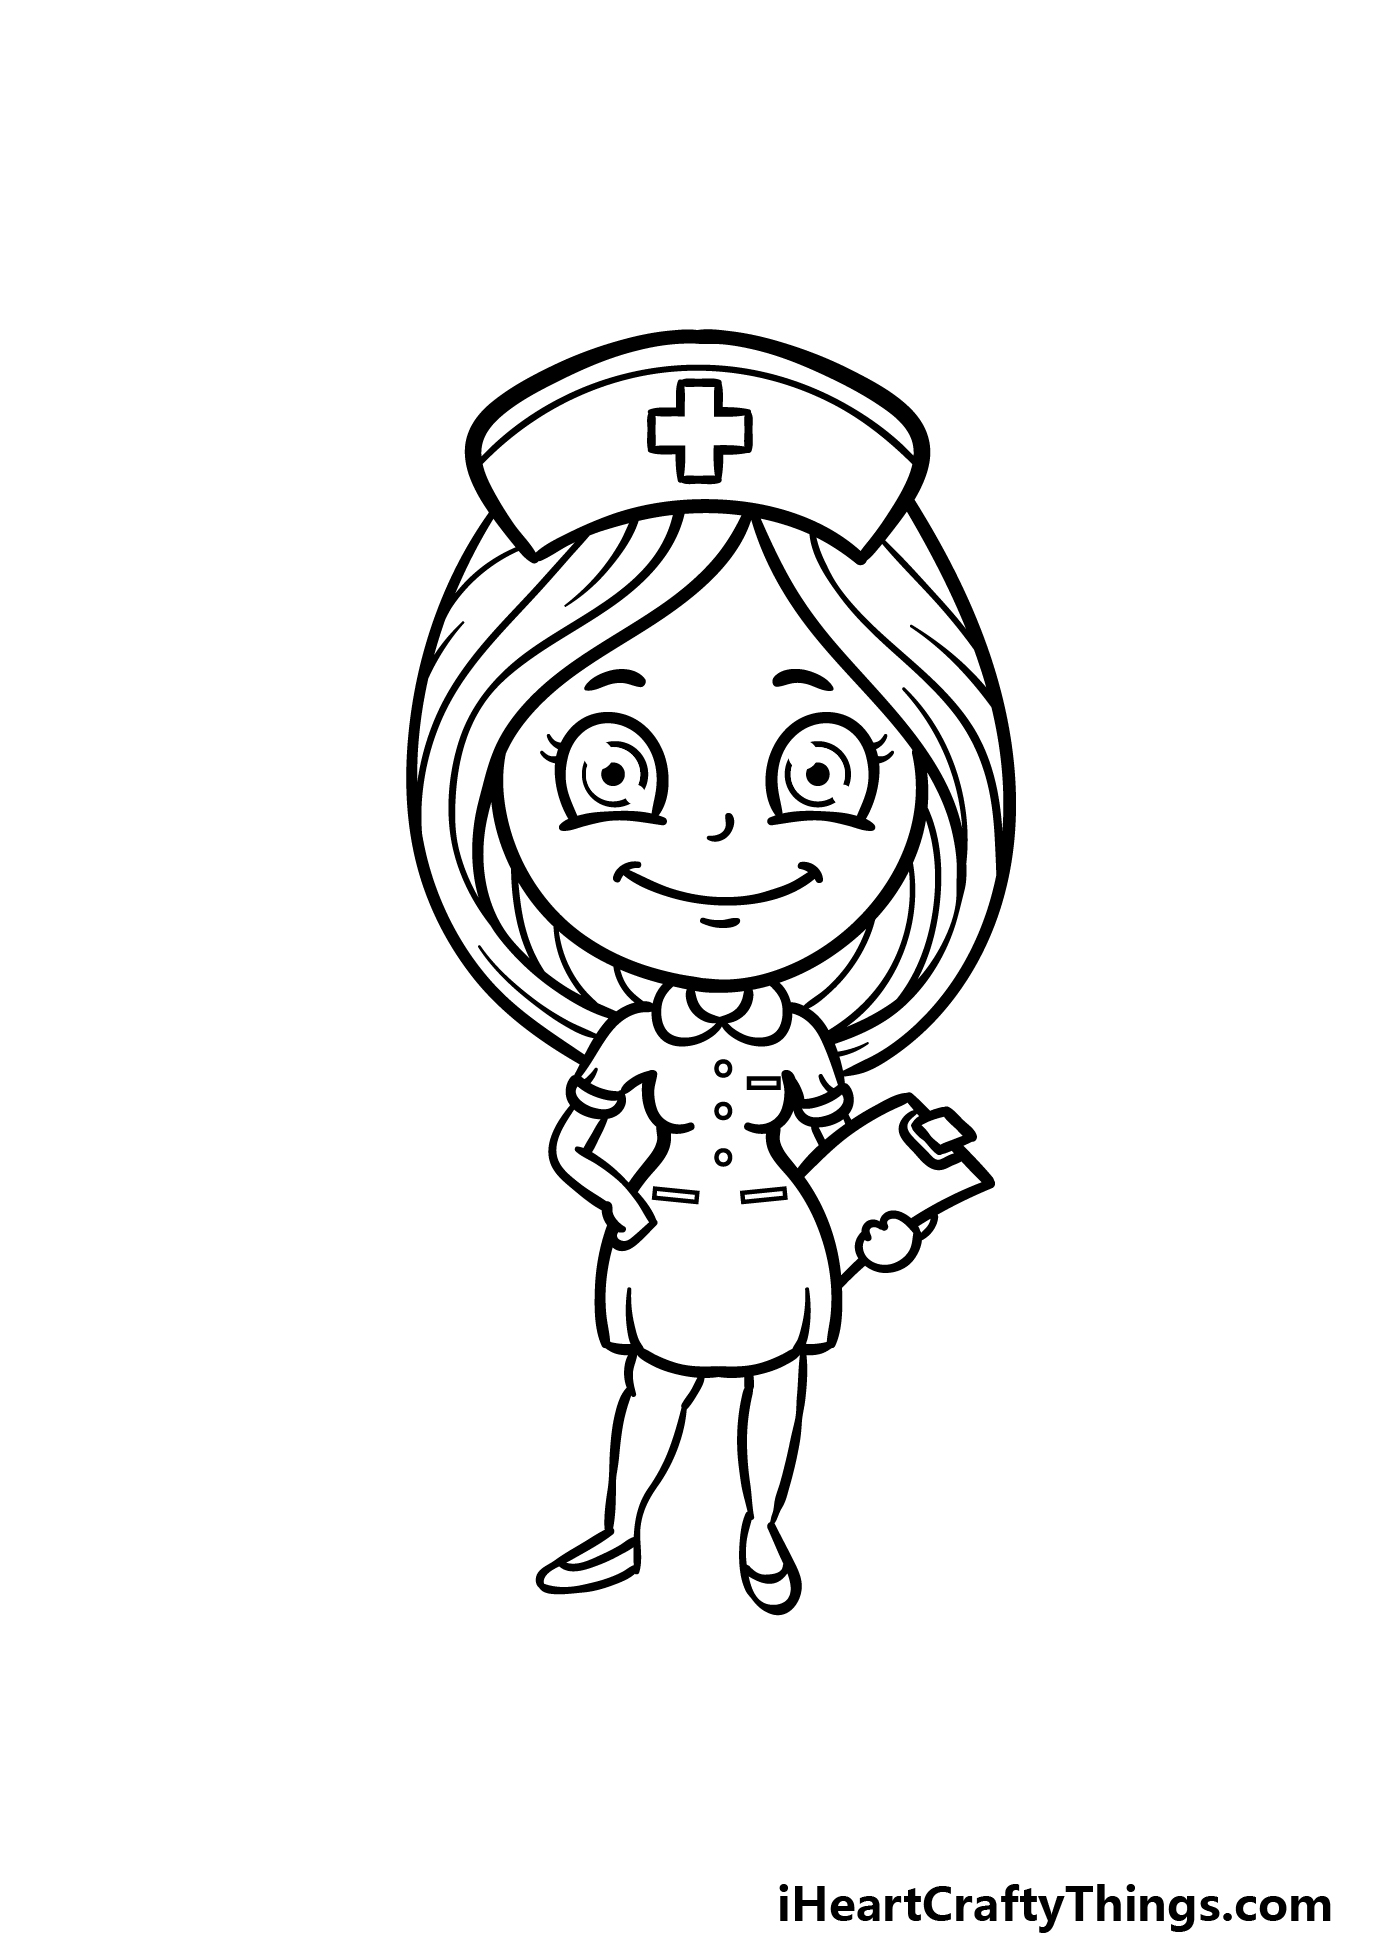 how to draw a cartoon nurse step 7